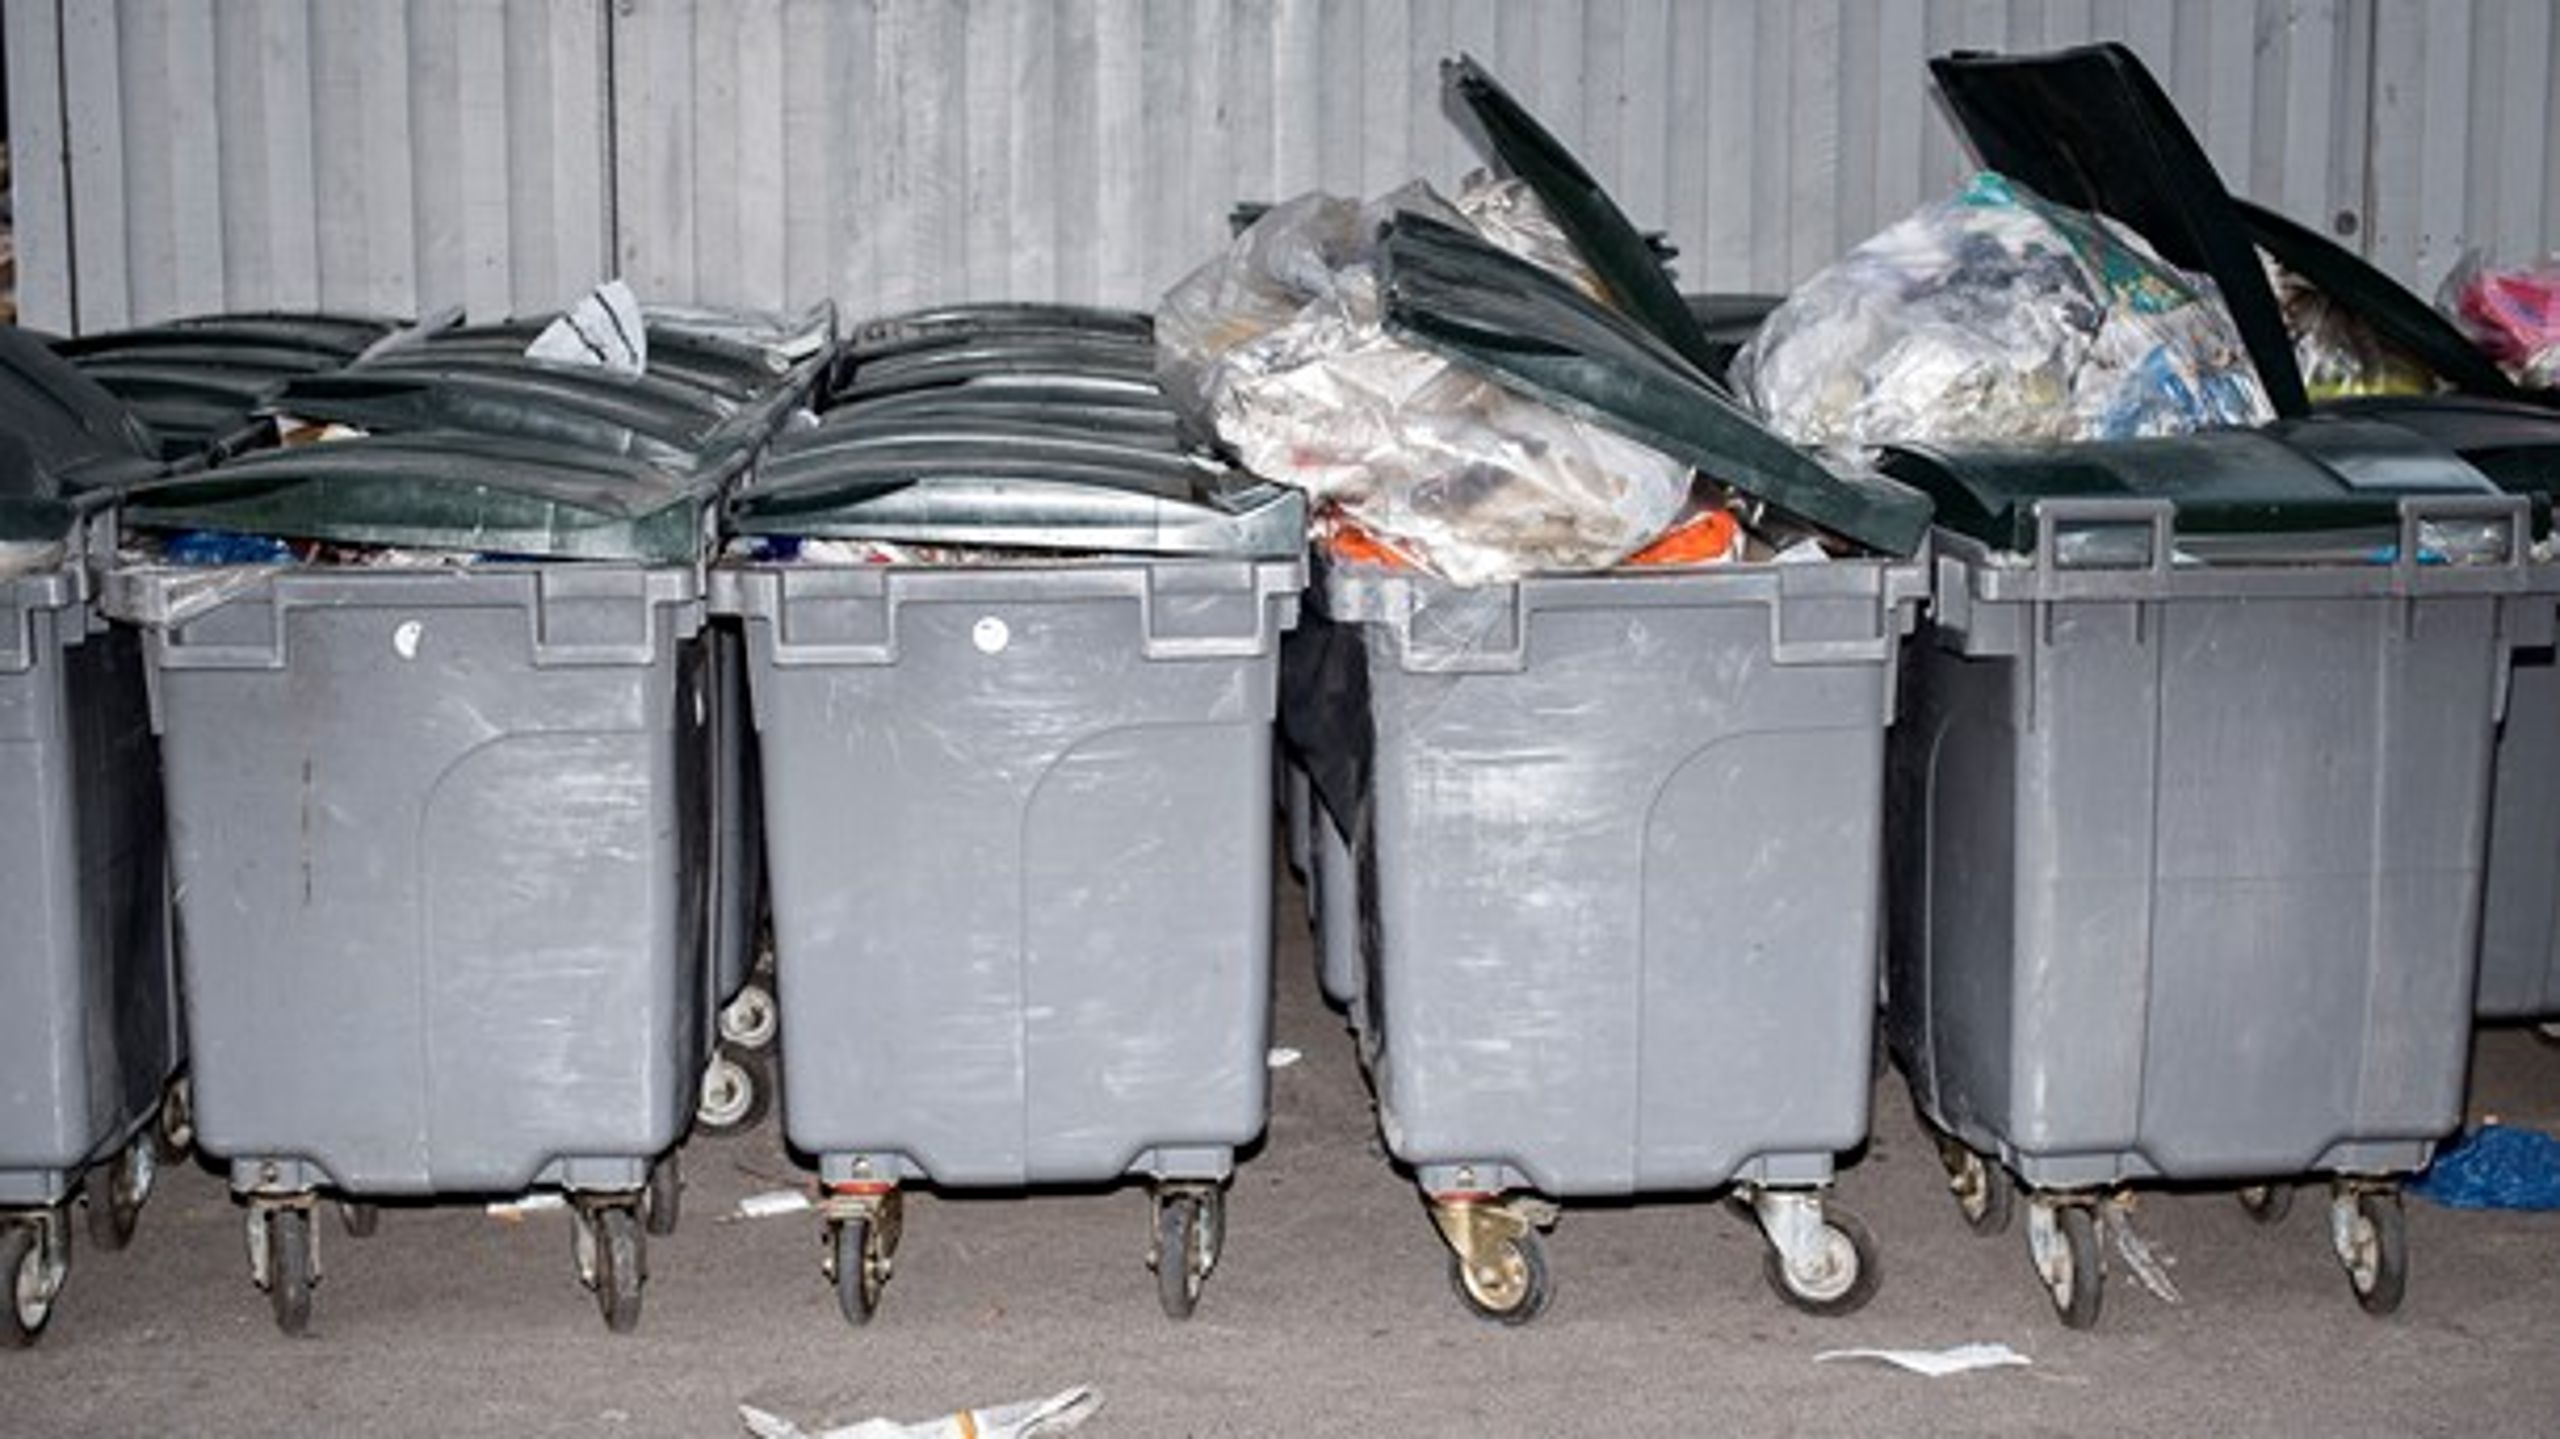 Der skal være en ensrettet indsamlet og sortering af affald på tværs af kommunegrænser, mener Jakob Ellemann-Jensen (Foto: Mathias Bojesen/Ritzau Scanpix)